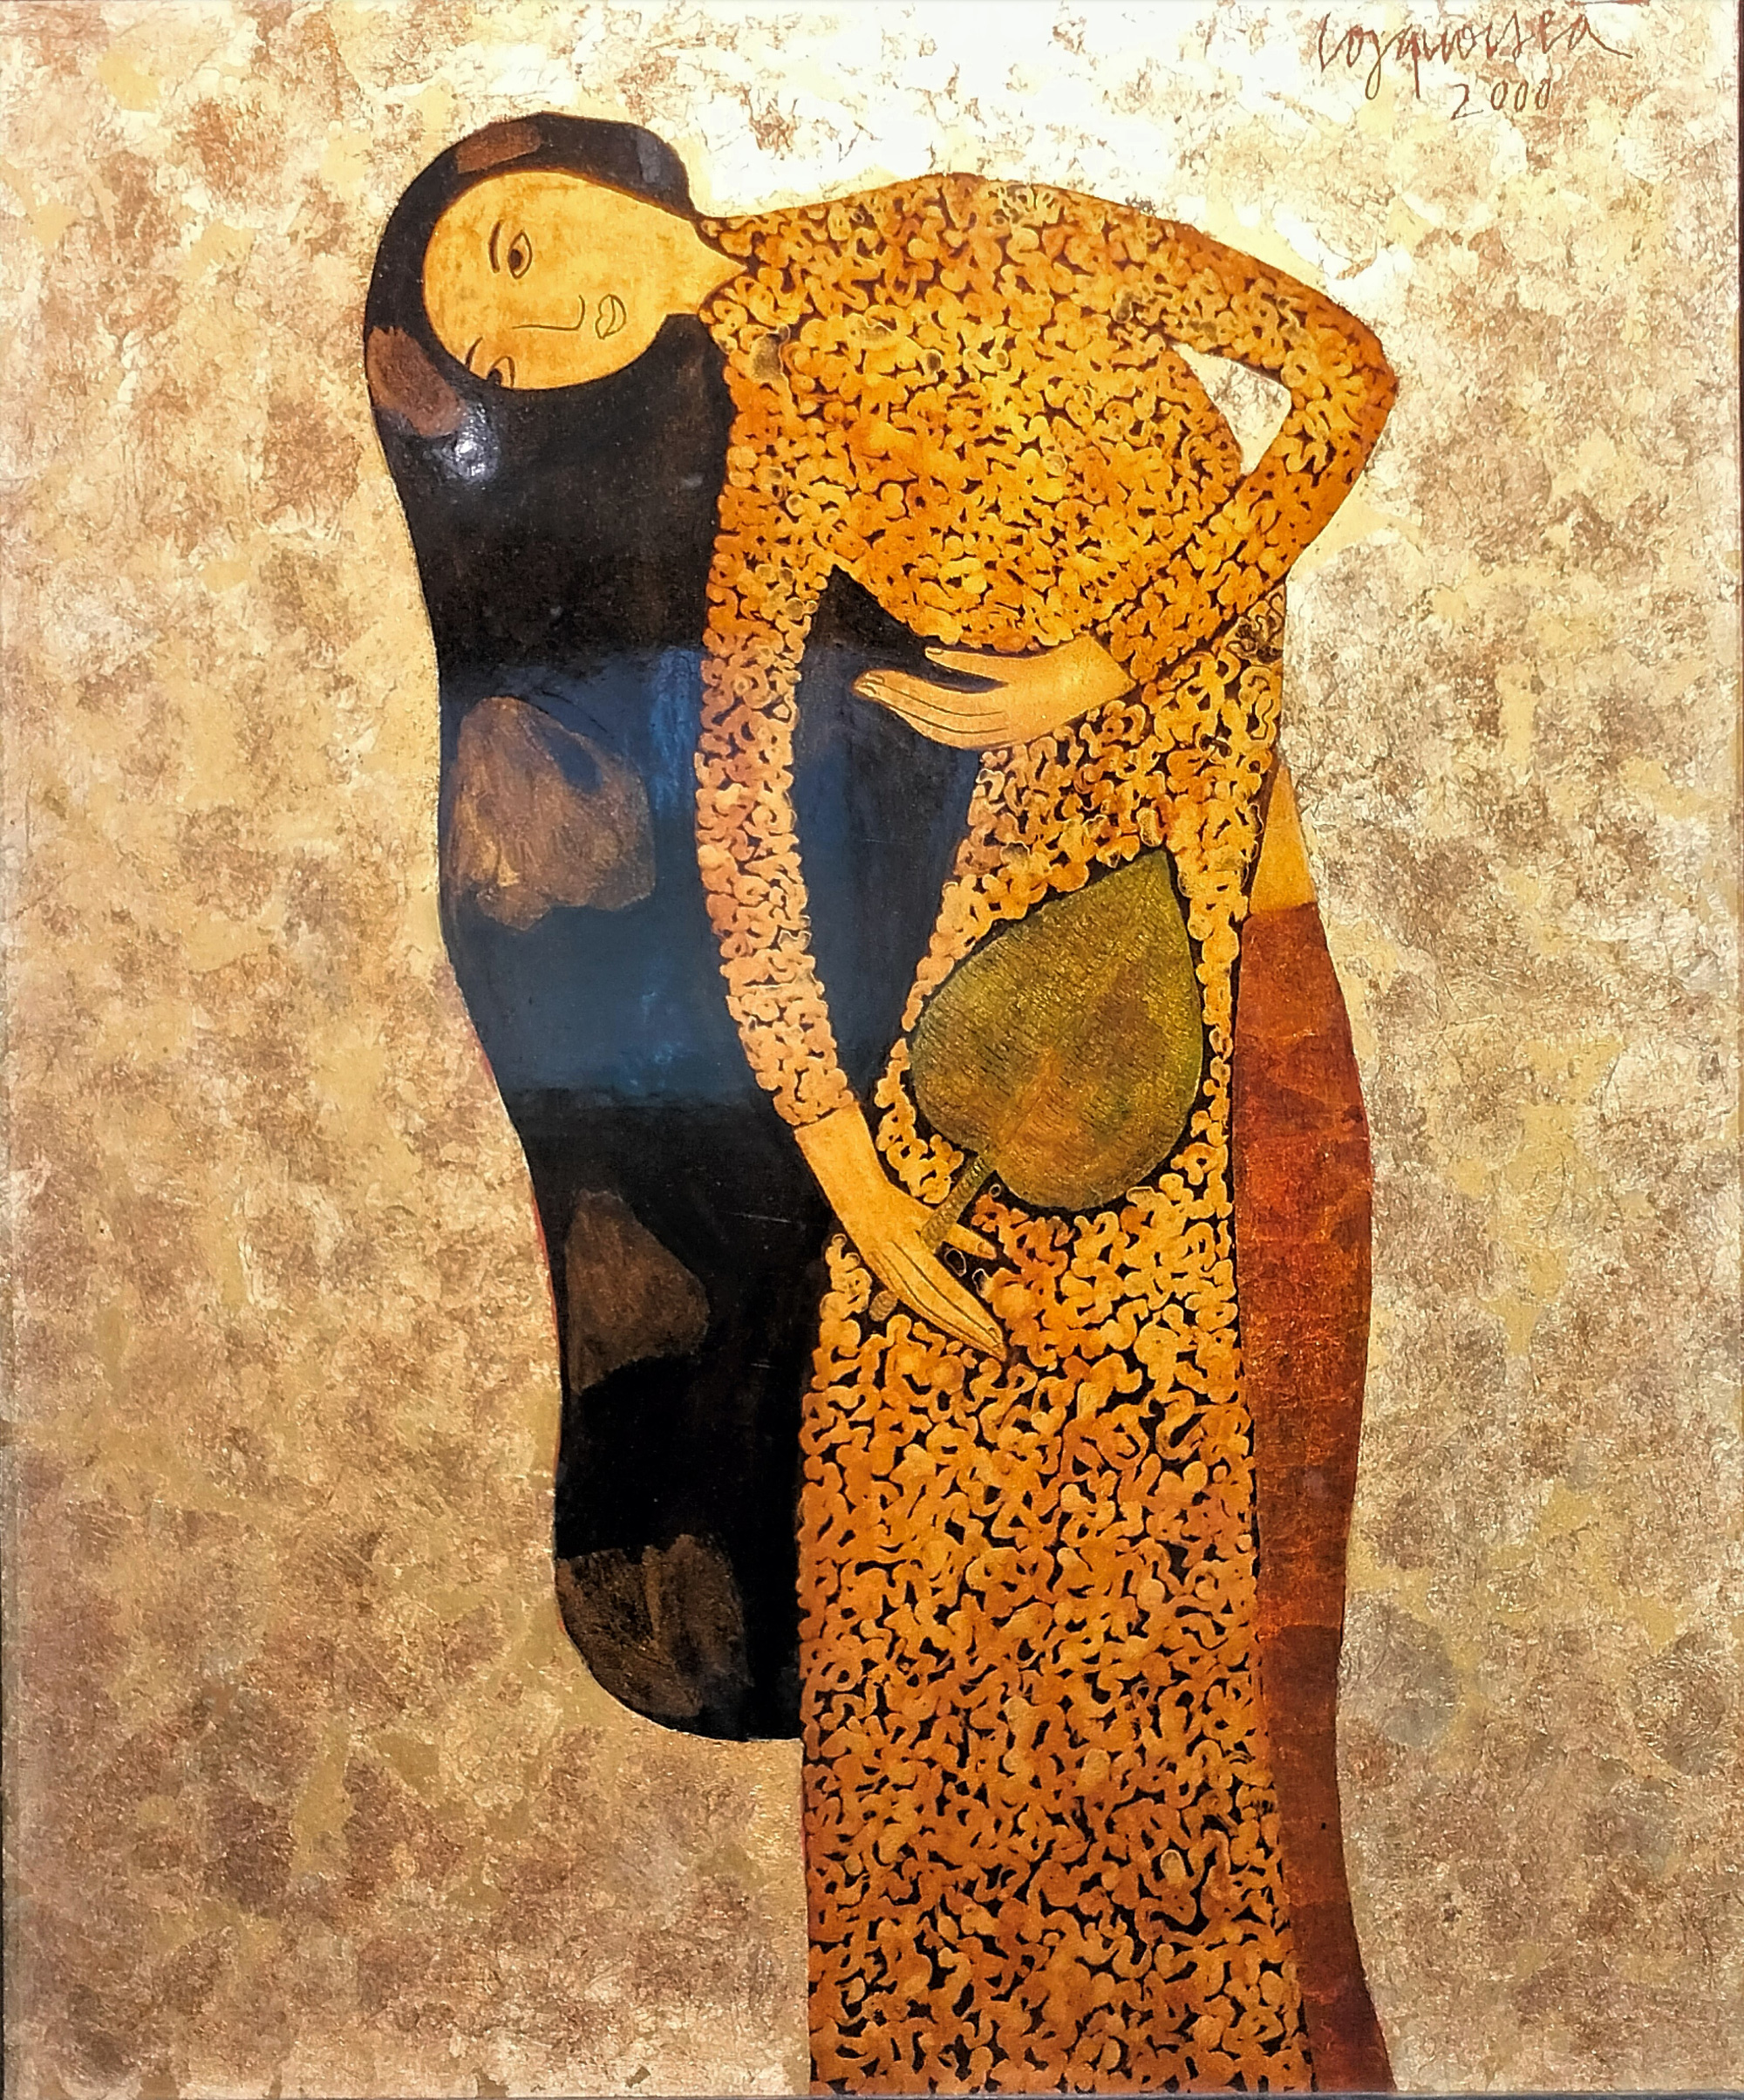 Tranh sơn mài "Thiếu nữ Hà Nội" của họa sĩ Công Quốc Hà. Sinh năm 1955, ông nổi tiếng với những nhân vật nữ mang vóc dáng thanh lịch, nằm trong nhóm họa sĩ góp phần làm sống lại nghệ thuật sơn mài truyền thống với diện mạo hiện đại trong mắt quốc tế.